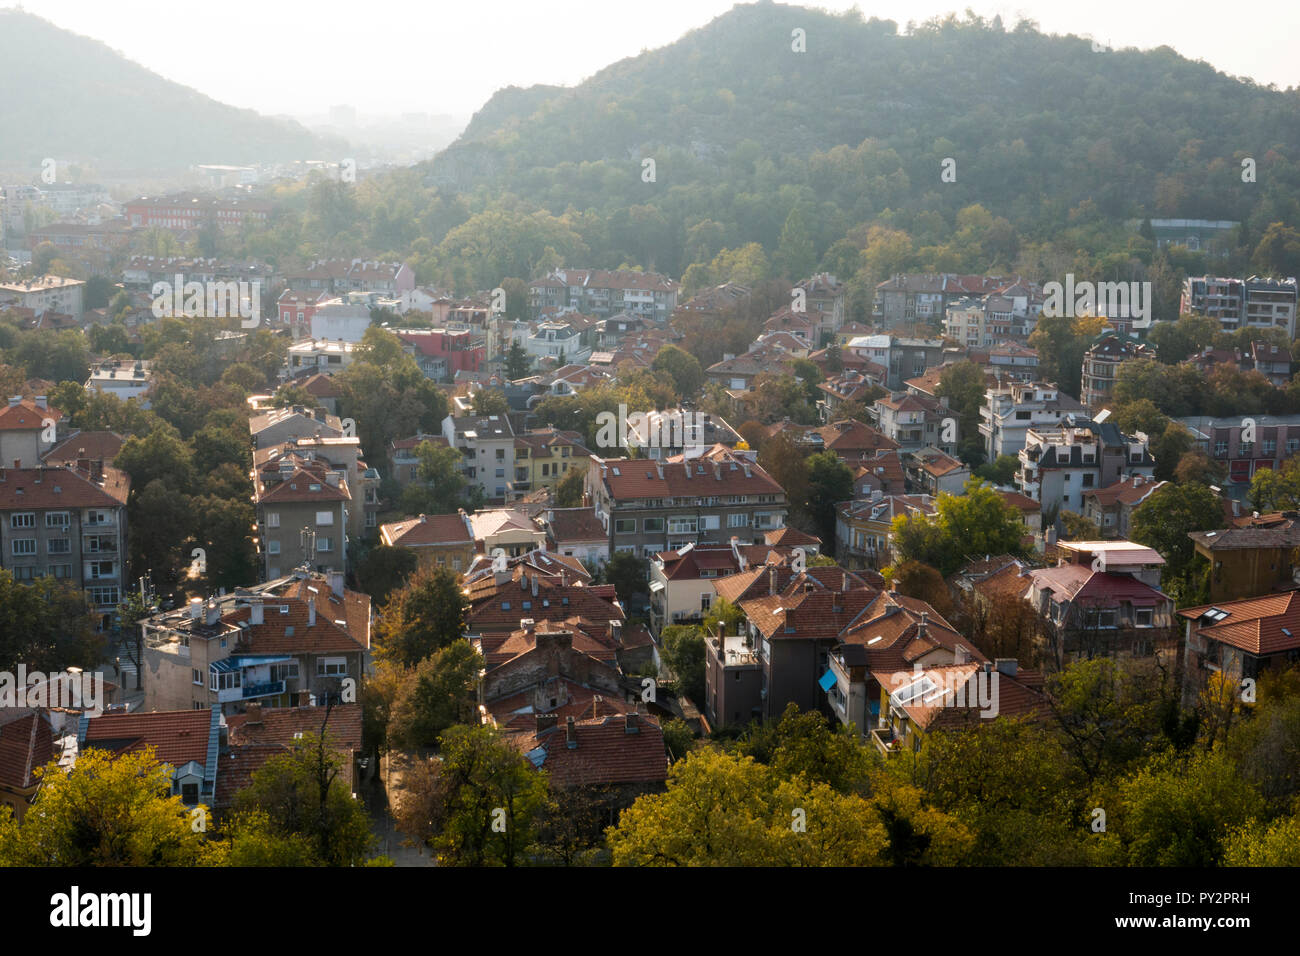 Angolo alto vista panoramica della zona residenziale e alberi d'autunno in Plovdiv, Bulgaria Foto Stock